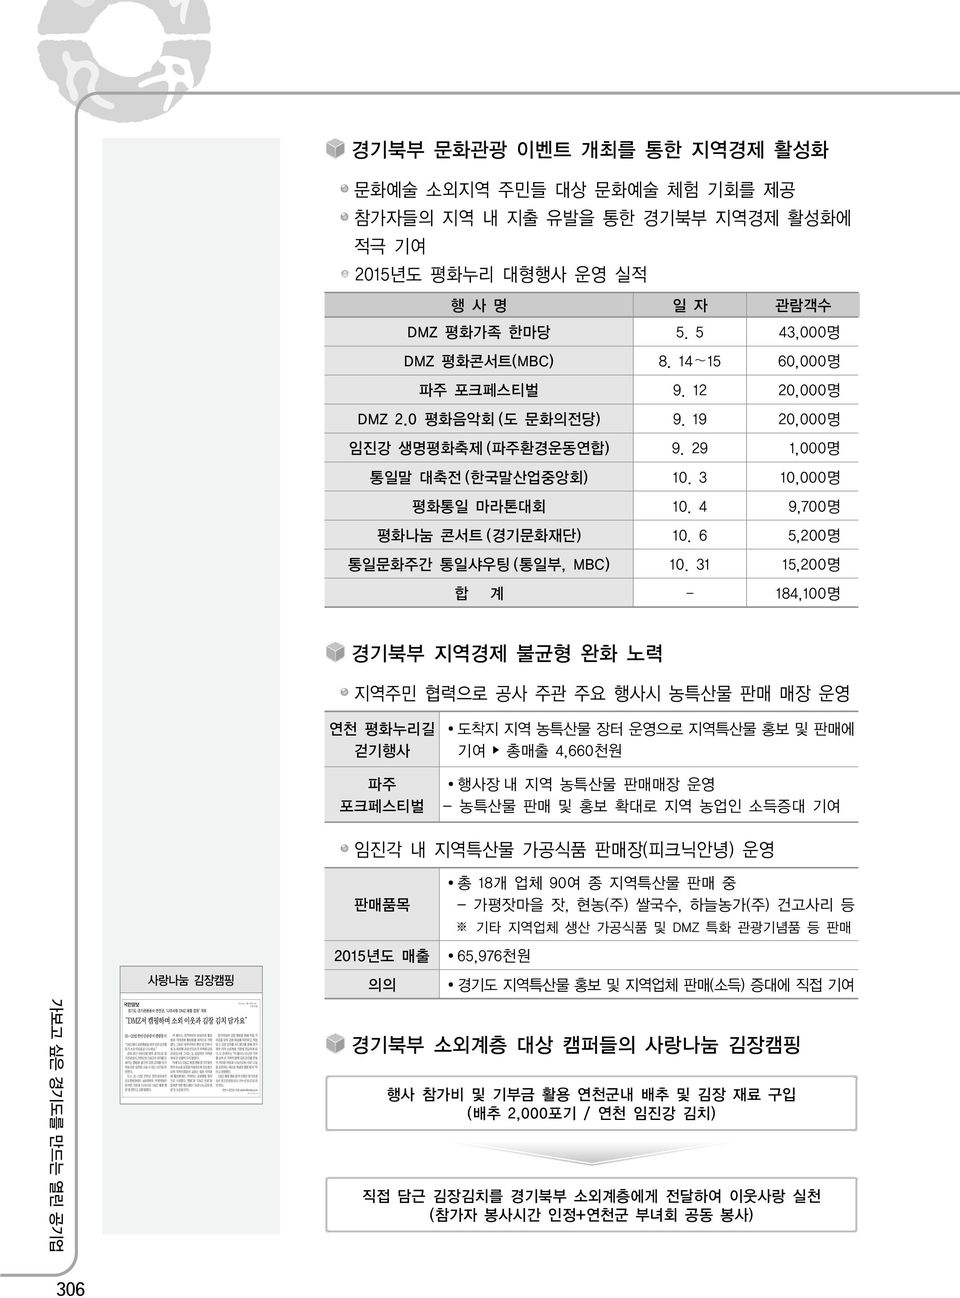 6 5,200명 통일문화주간 통일샤우팅 (통일부, MBC) 10.